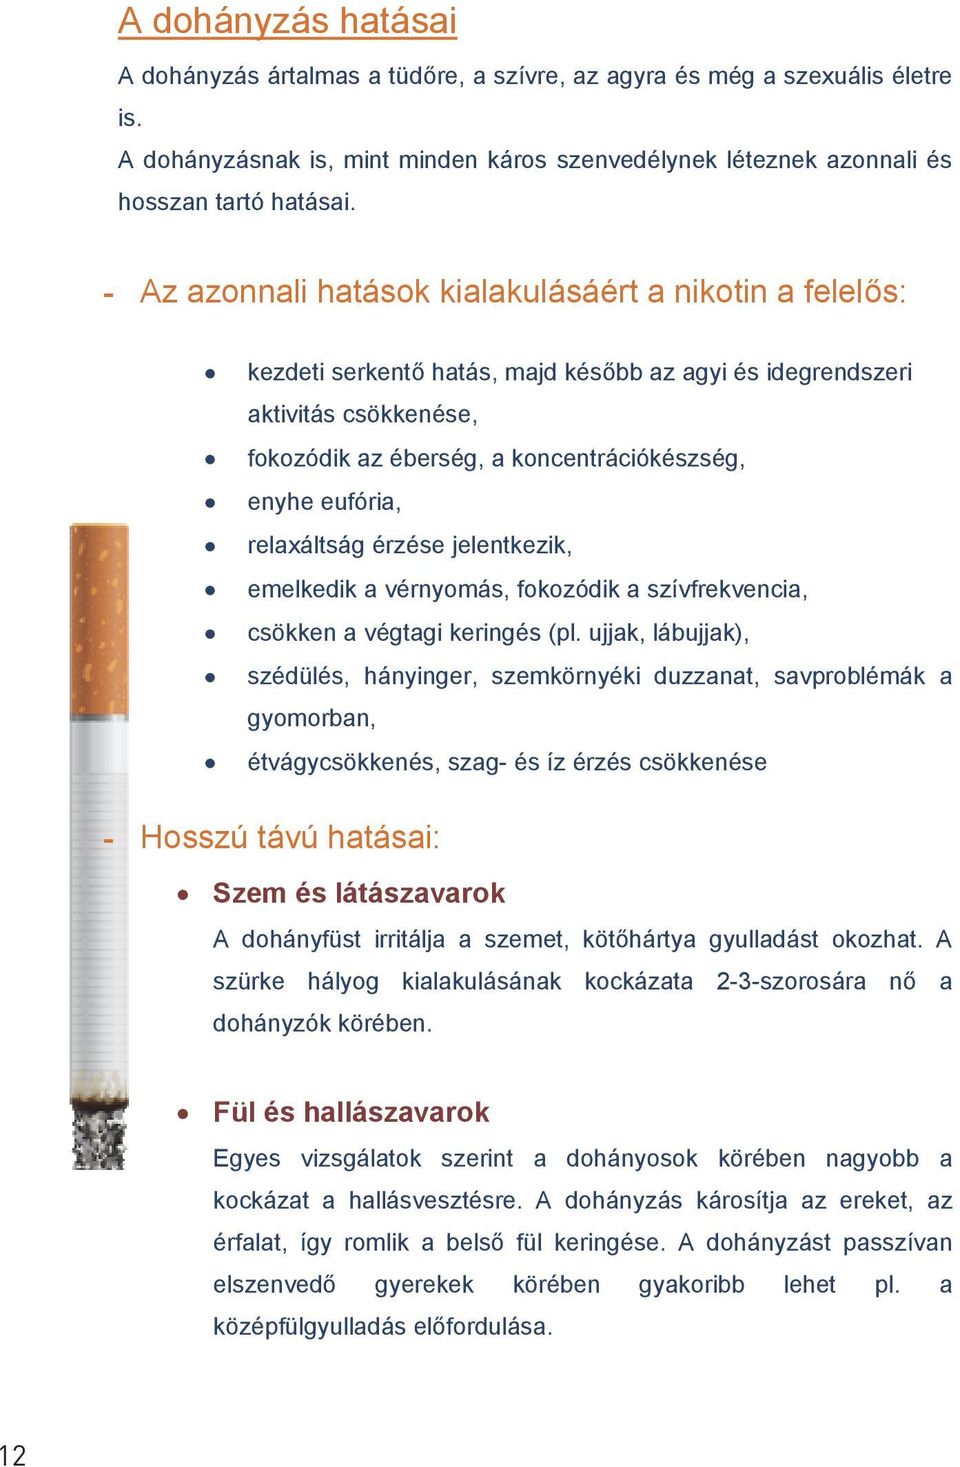 hogyan lehet leszokni a dohányzásról egy cégnél